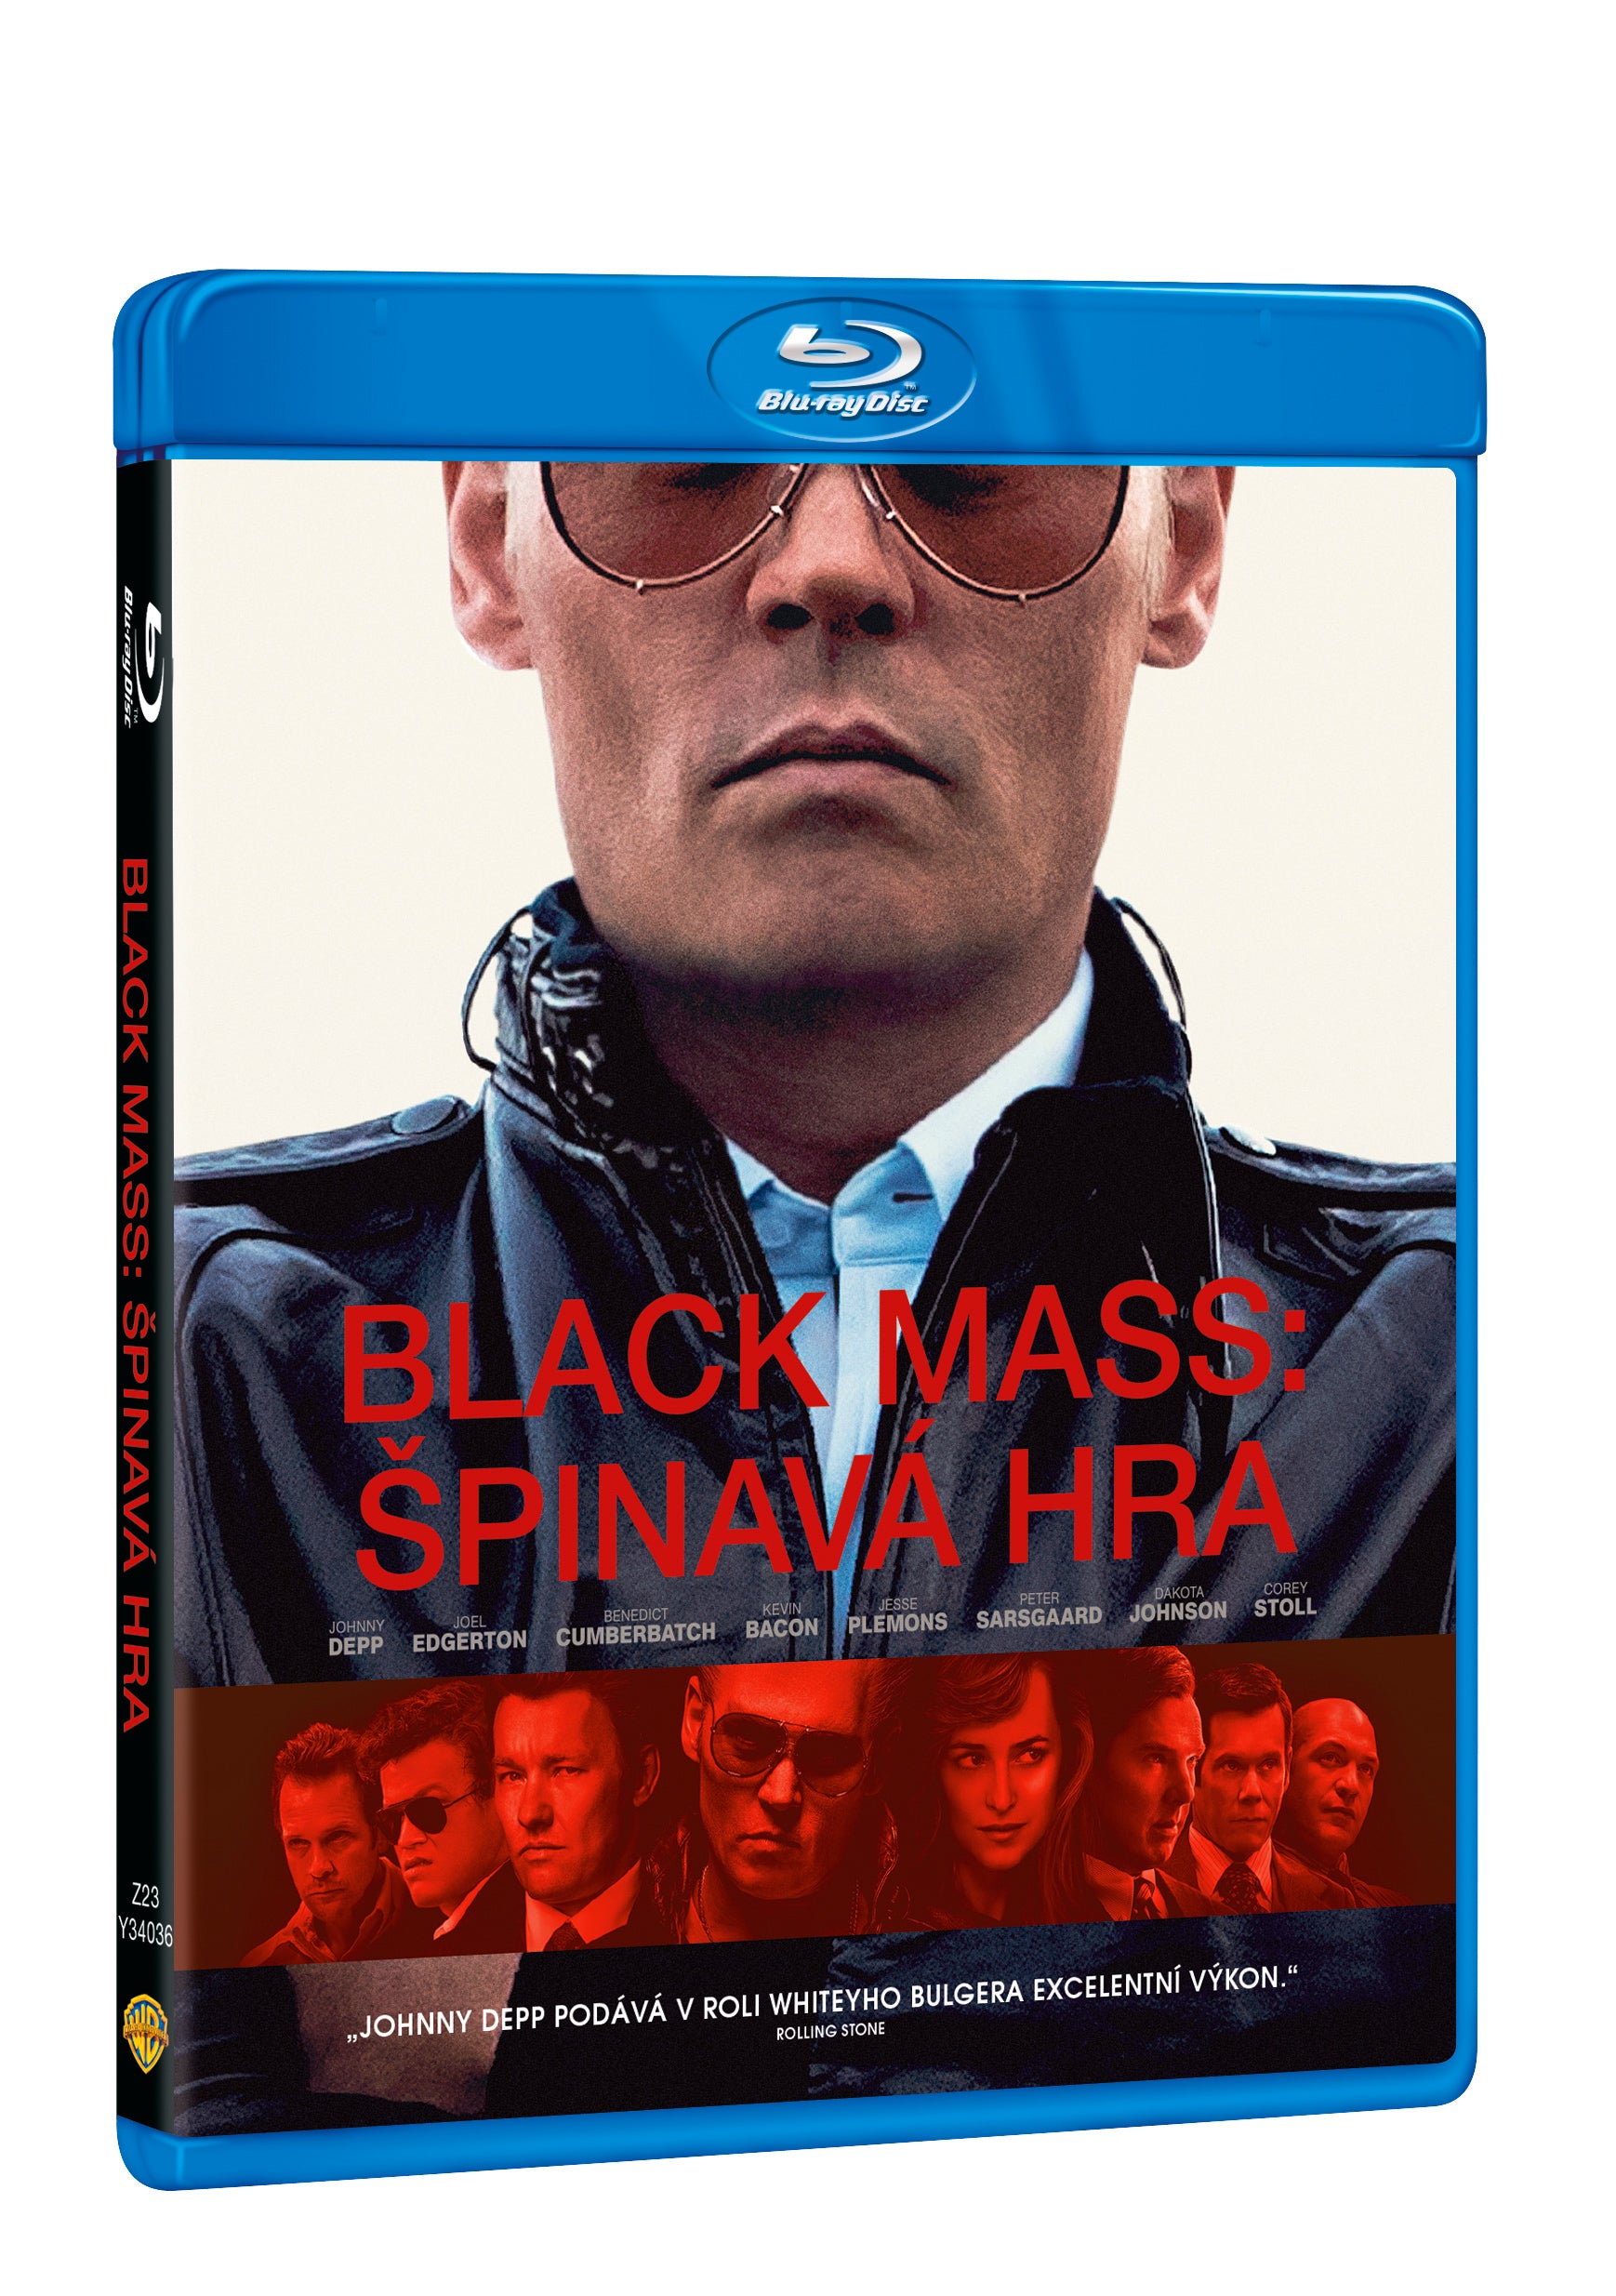 Black Mass: Spinava hra BD / Black Mass - Czech version